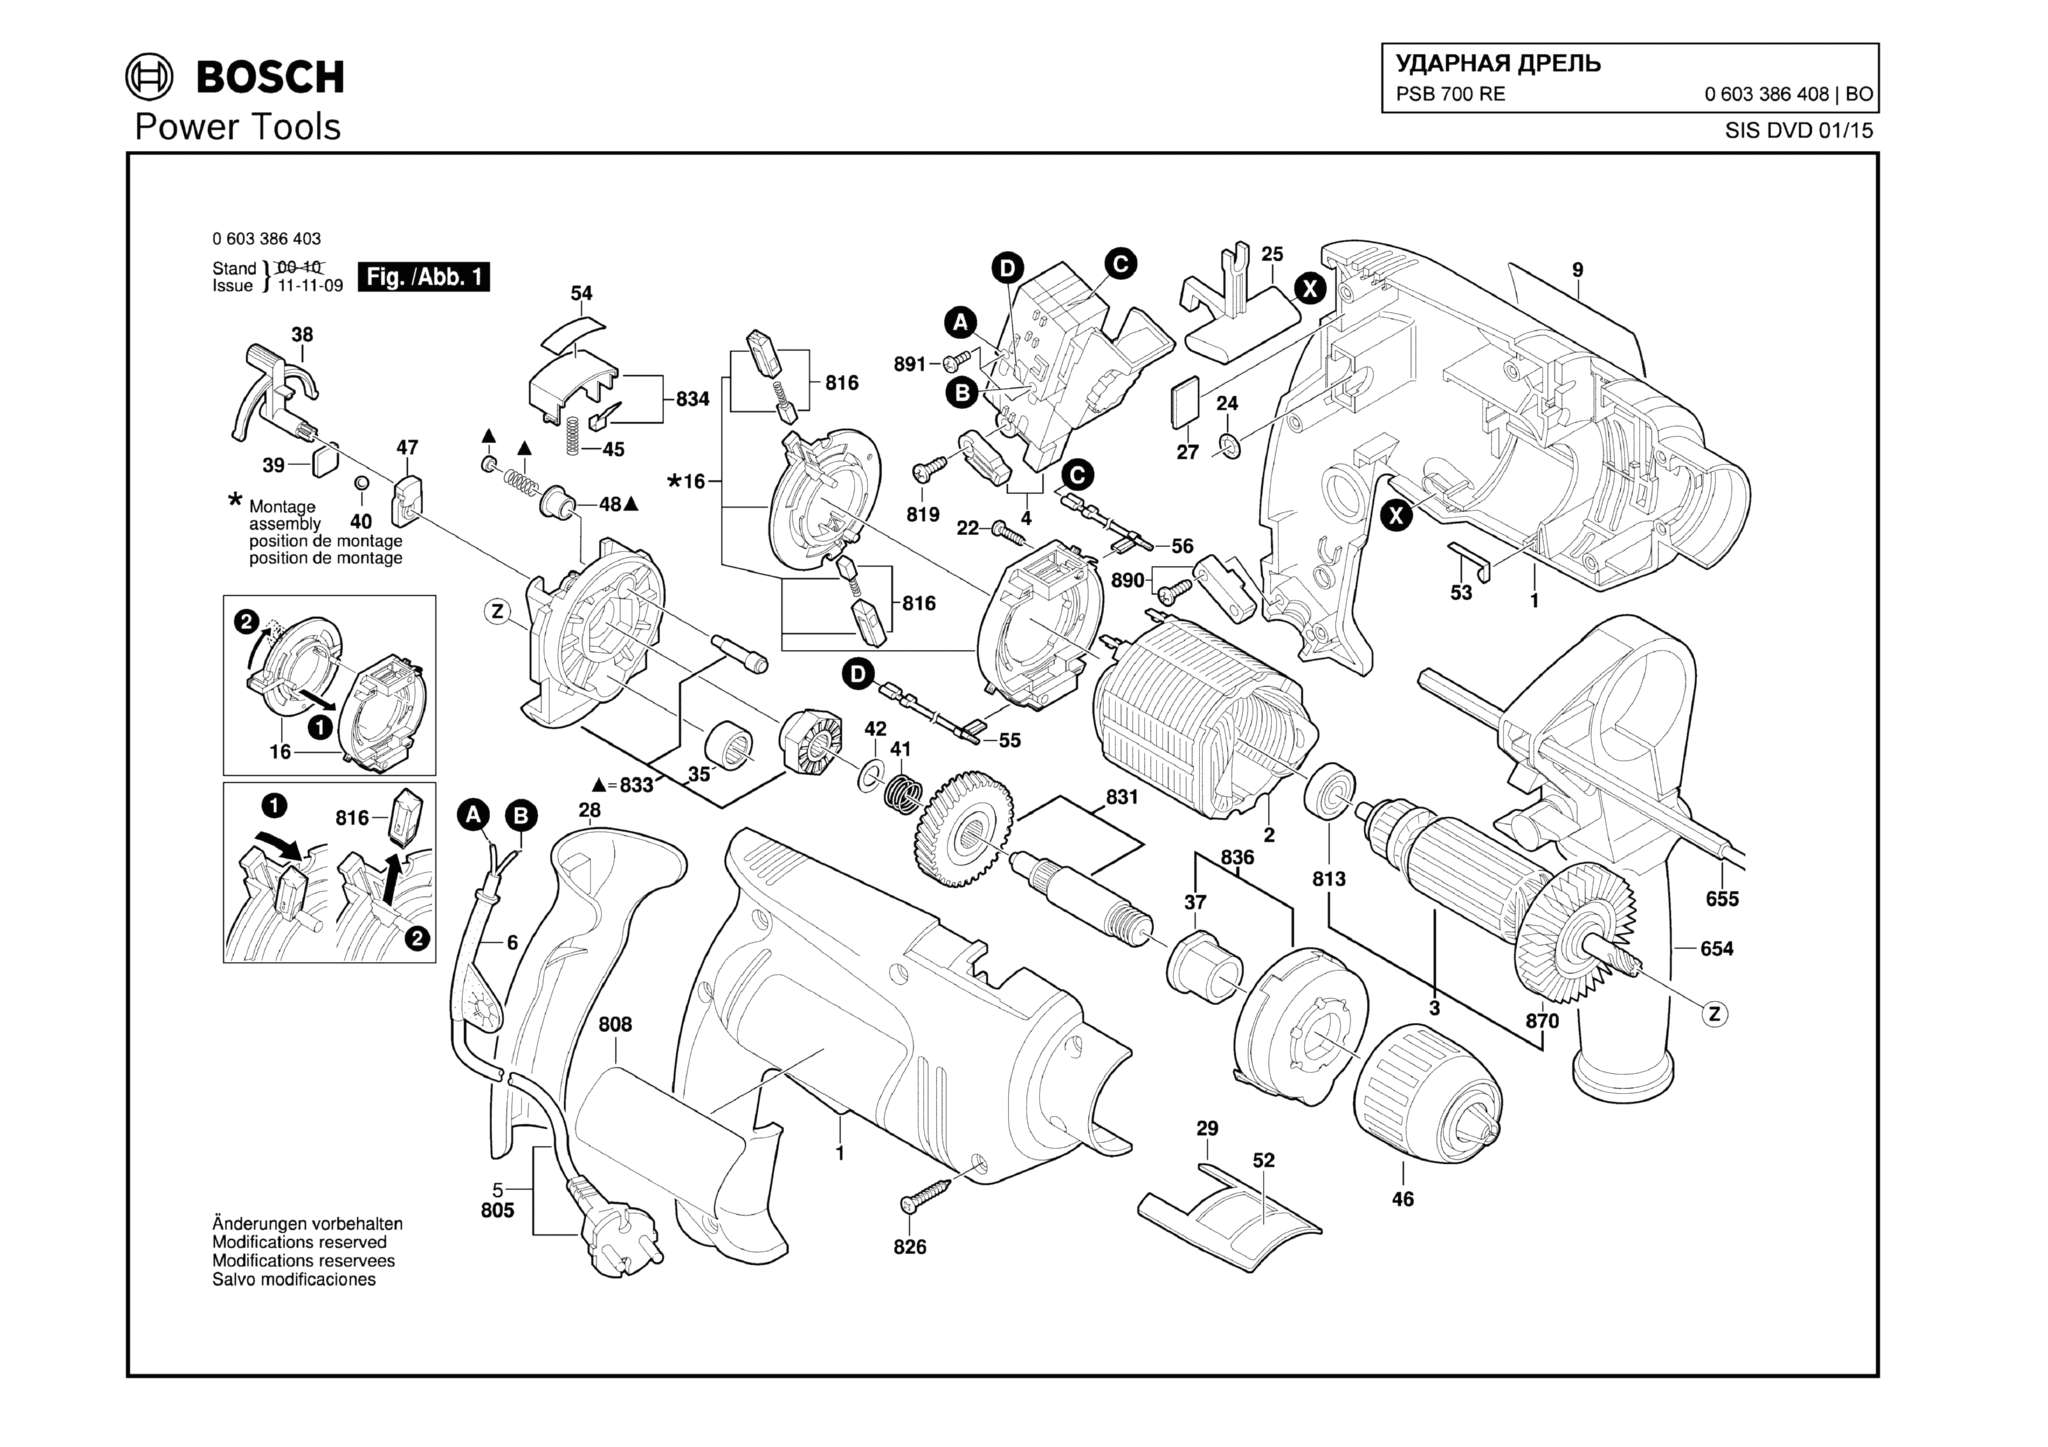 Запчасти, схема и деталировка Bosch PSB 700 RE (ТИП 0603386408)